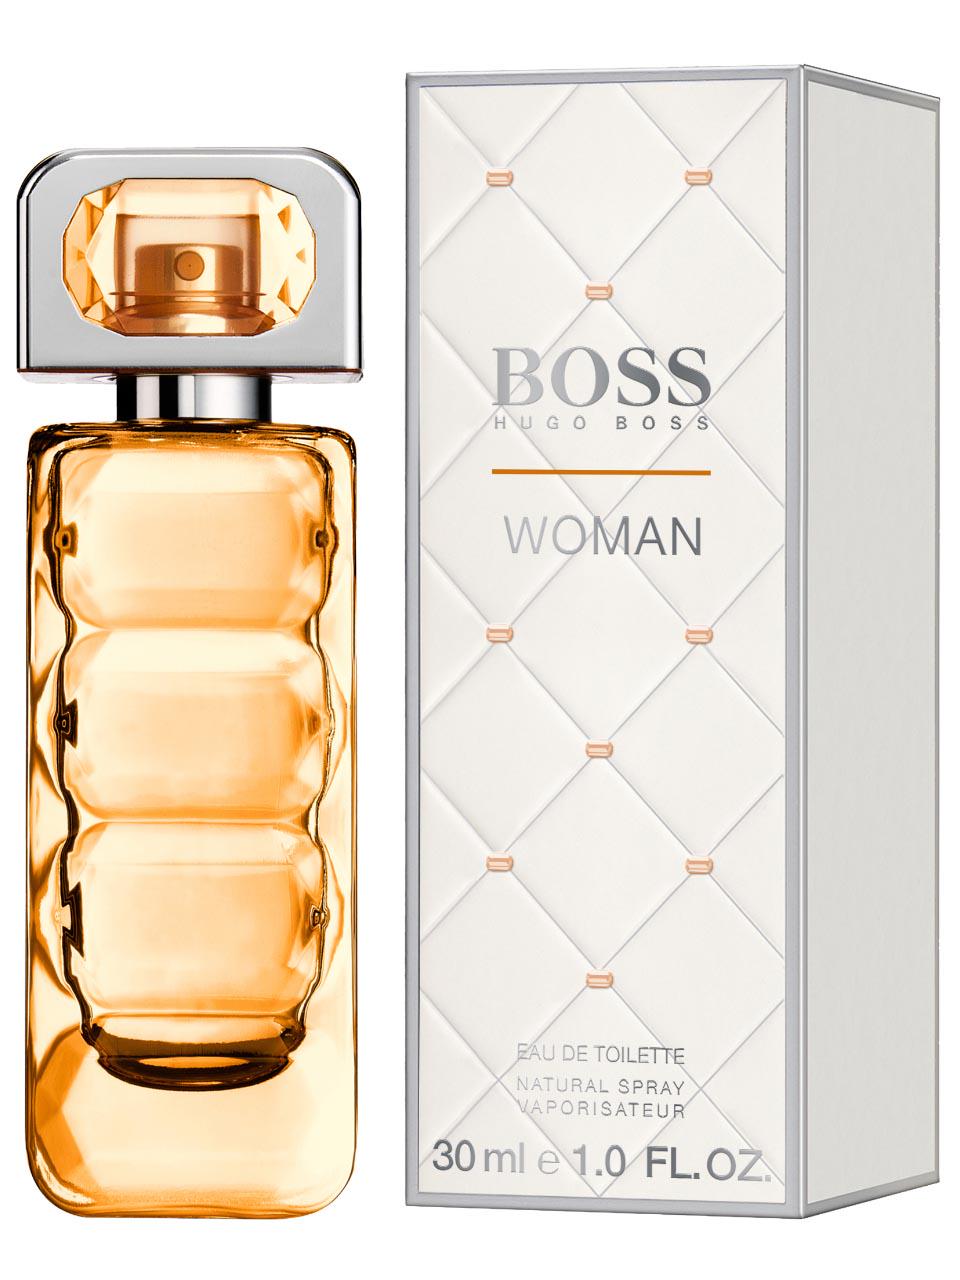 Boss Orange Woman Eau de Toilette 30 ml | Frankfurt Airport Online Shopping